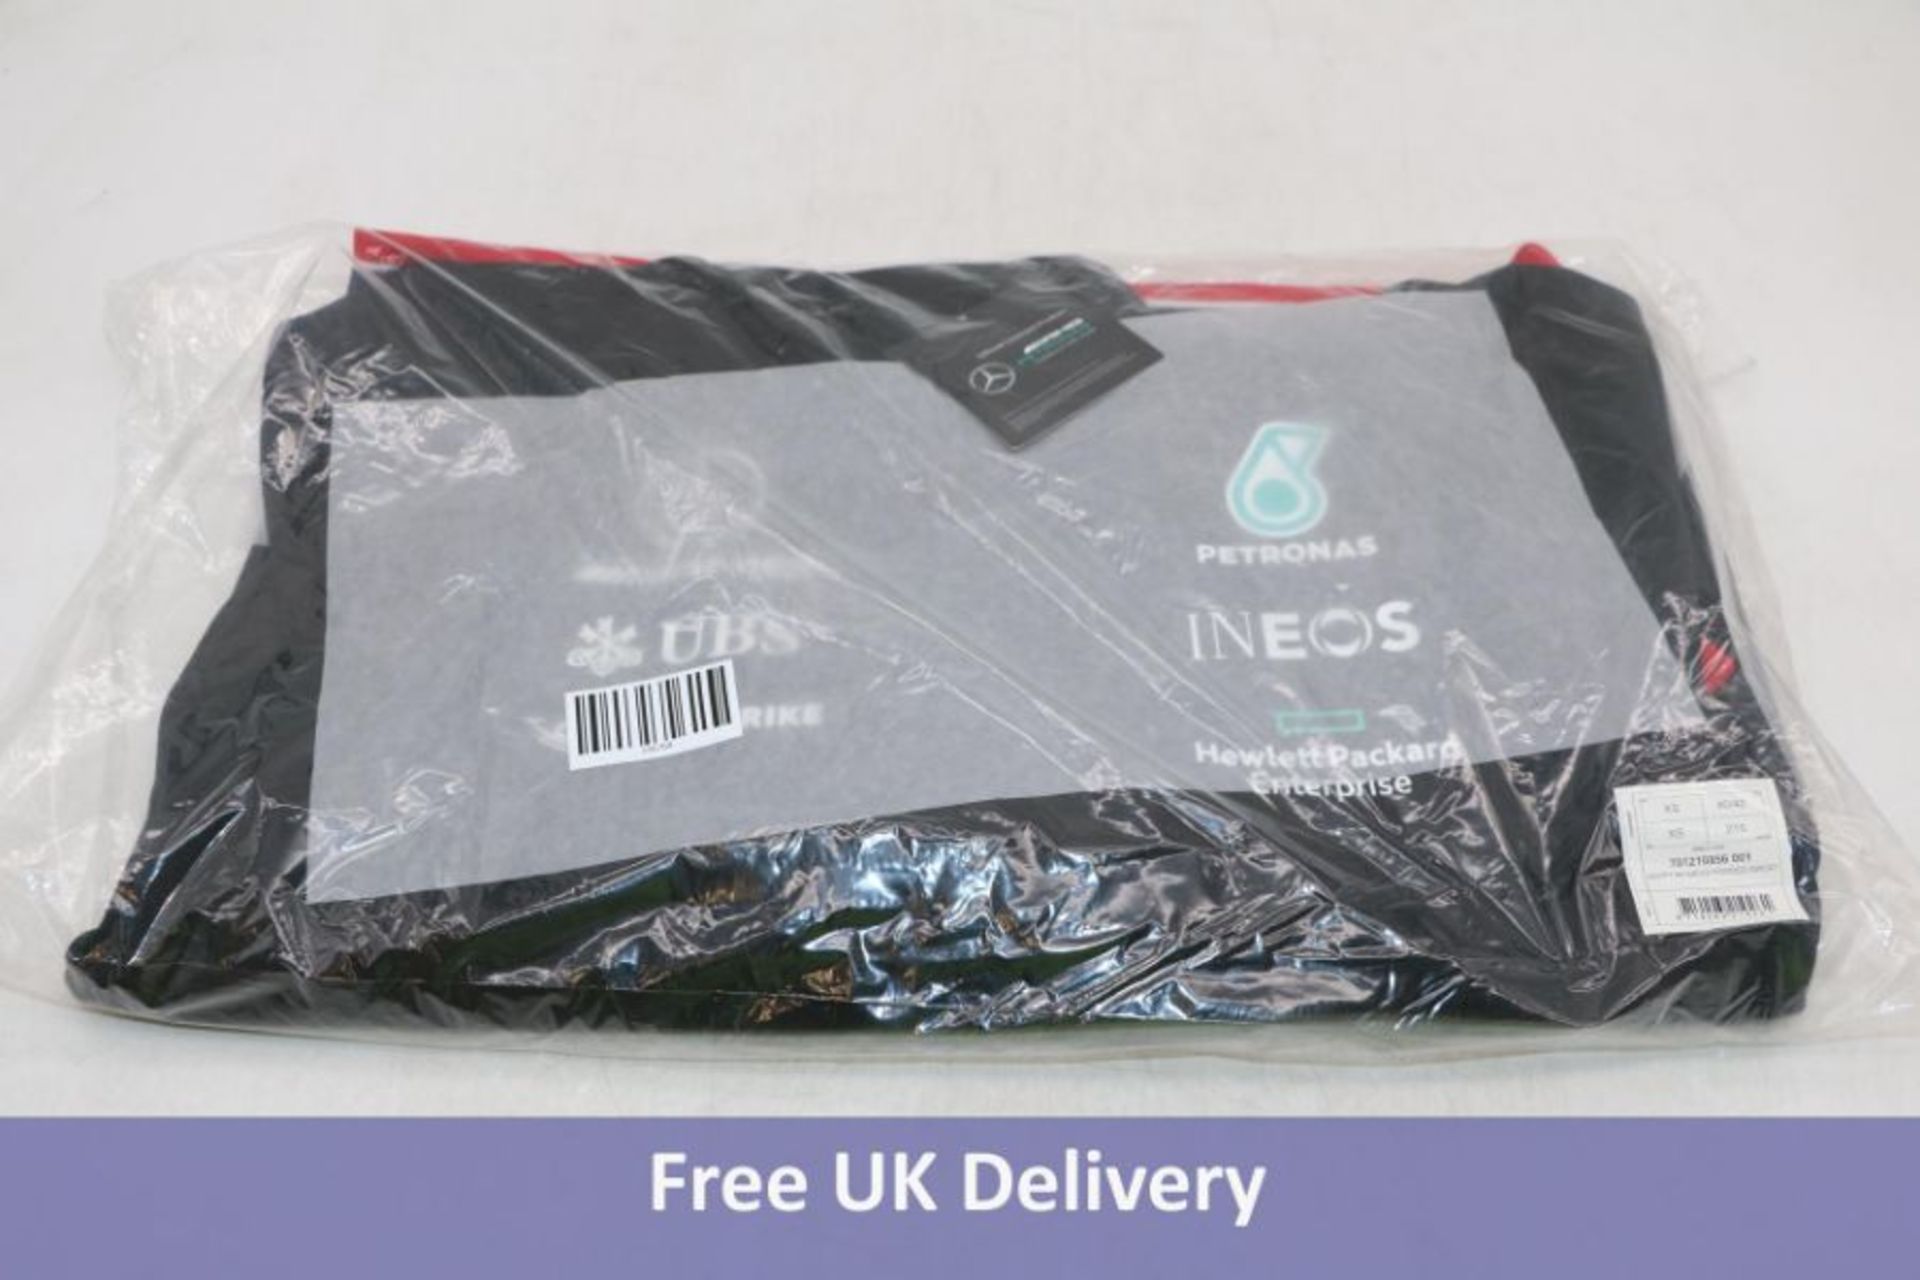 Three Mercedes Men's AMD Petronas, Hoodie, Black/Red, UK M - Image 2 of 3